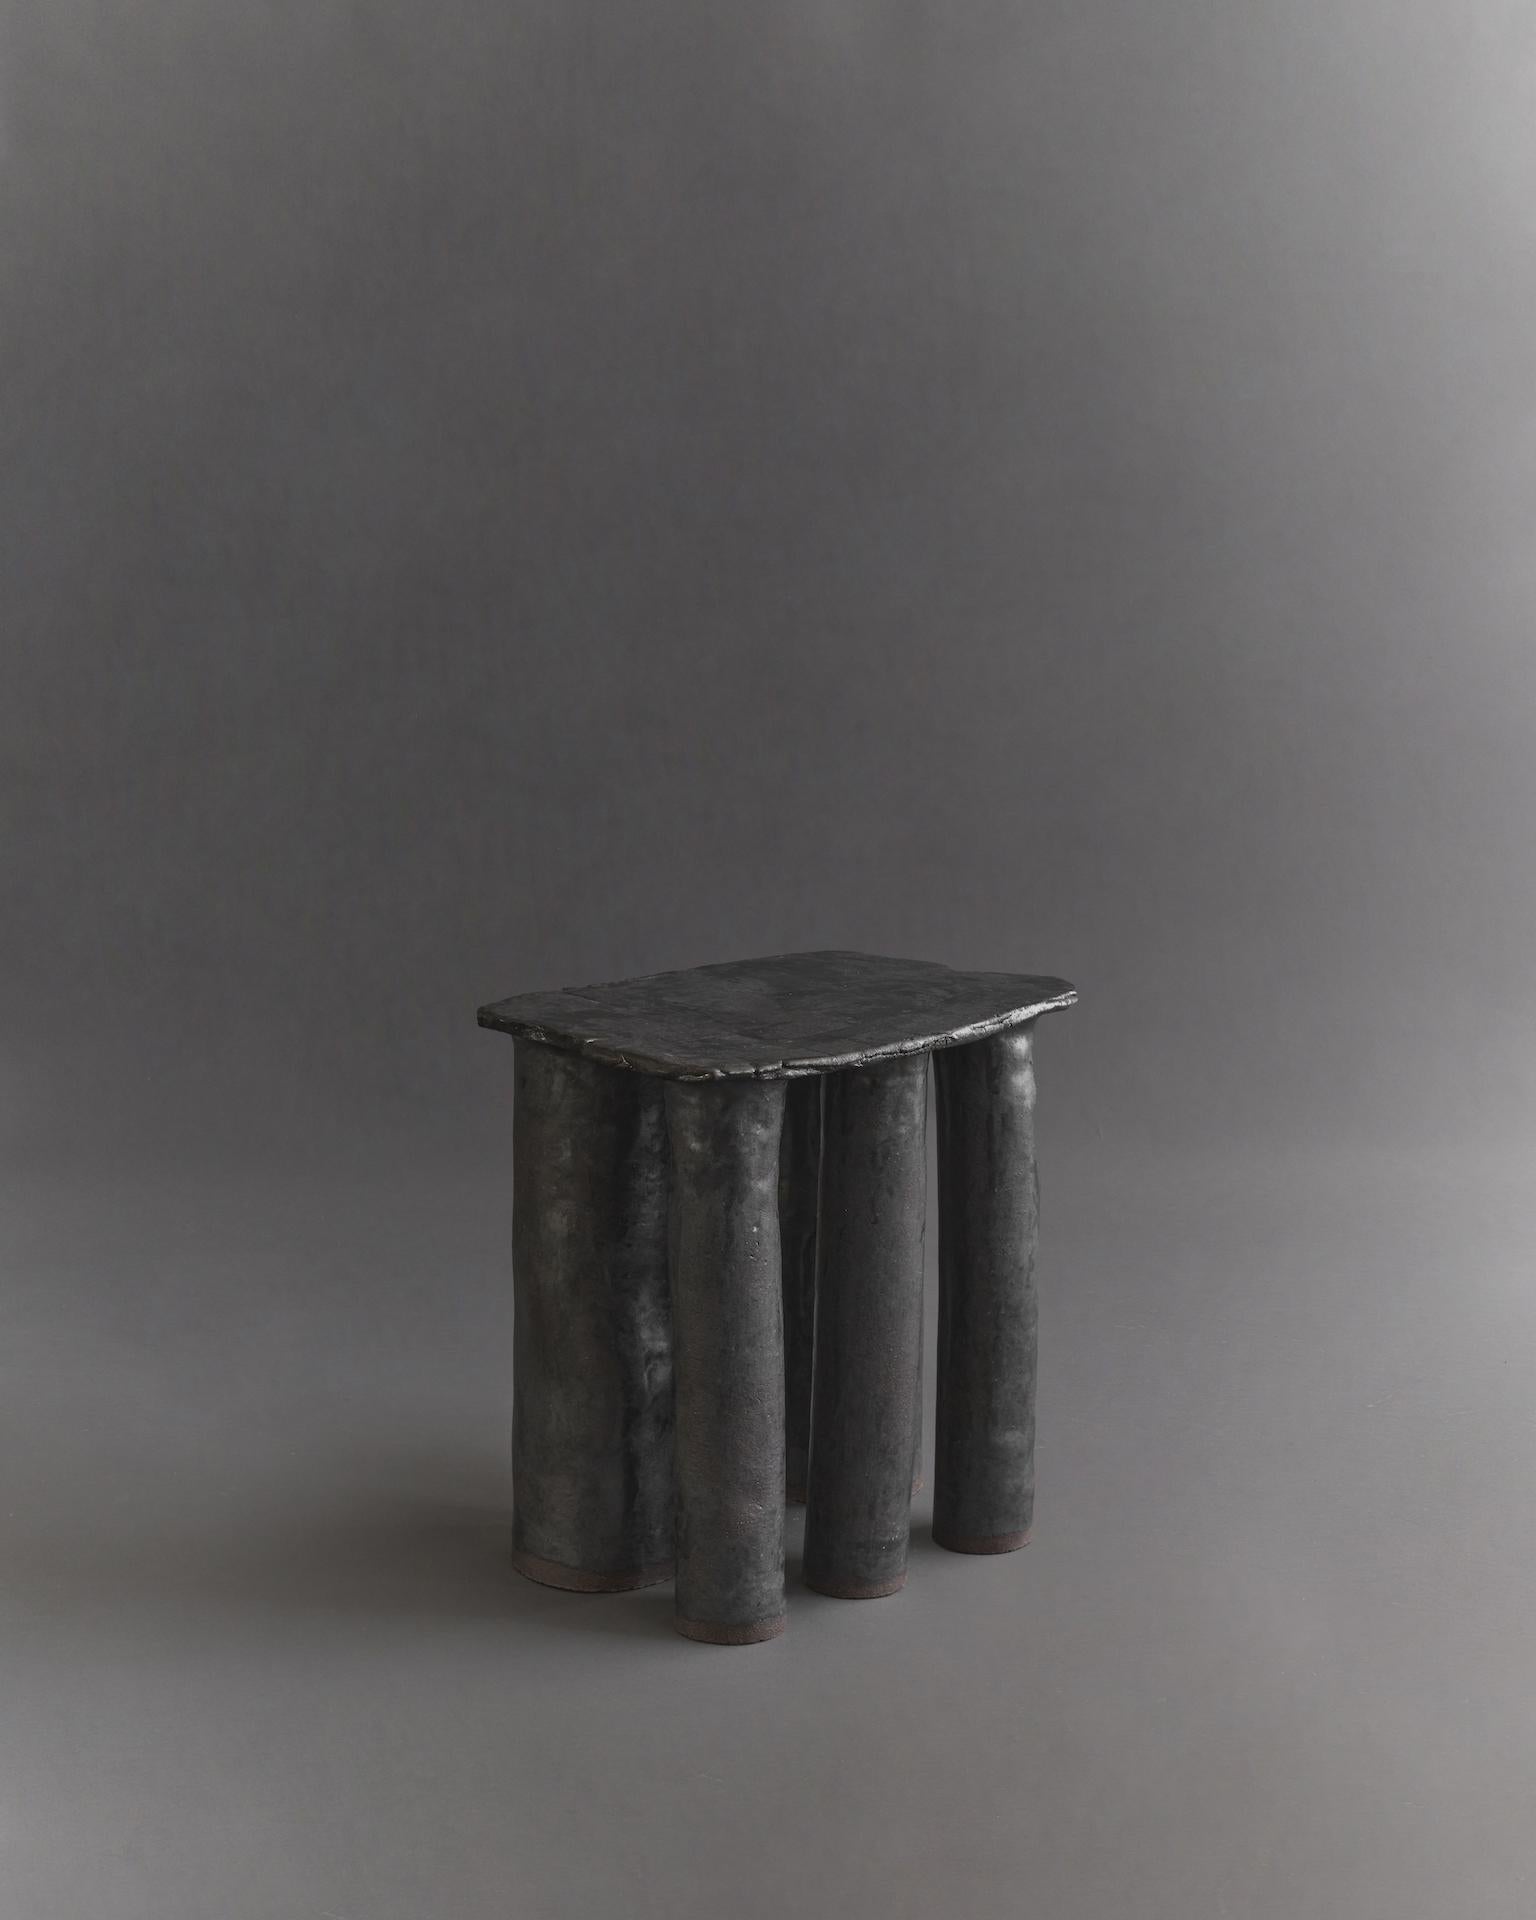 Beistelltisch aus Cleo-Tisch von Ombia
Abmessungen:  B 42 x T 33 x H 43,5 cm
MATERIALIEN: Ton, strukturierte schwarze Glasur. 
Kundenspezifische Farben auf Anfrage.


Ōmbia ist ein Studio für Keramikskulpturen und Design in Los Angeles. Der Name und